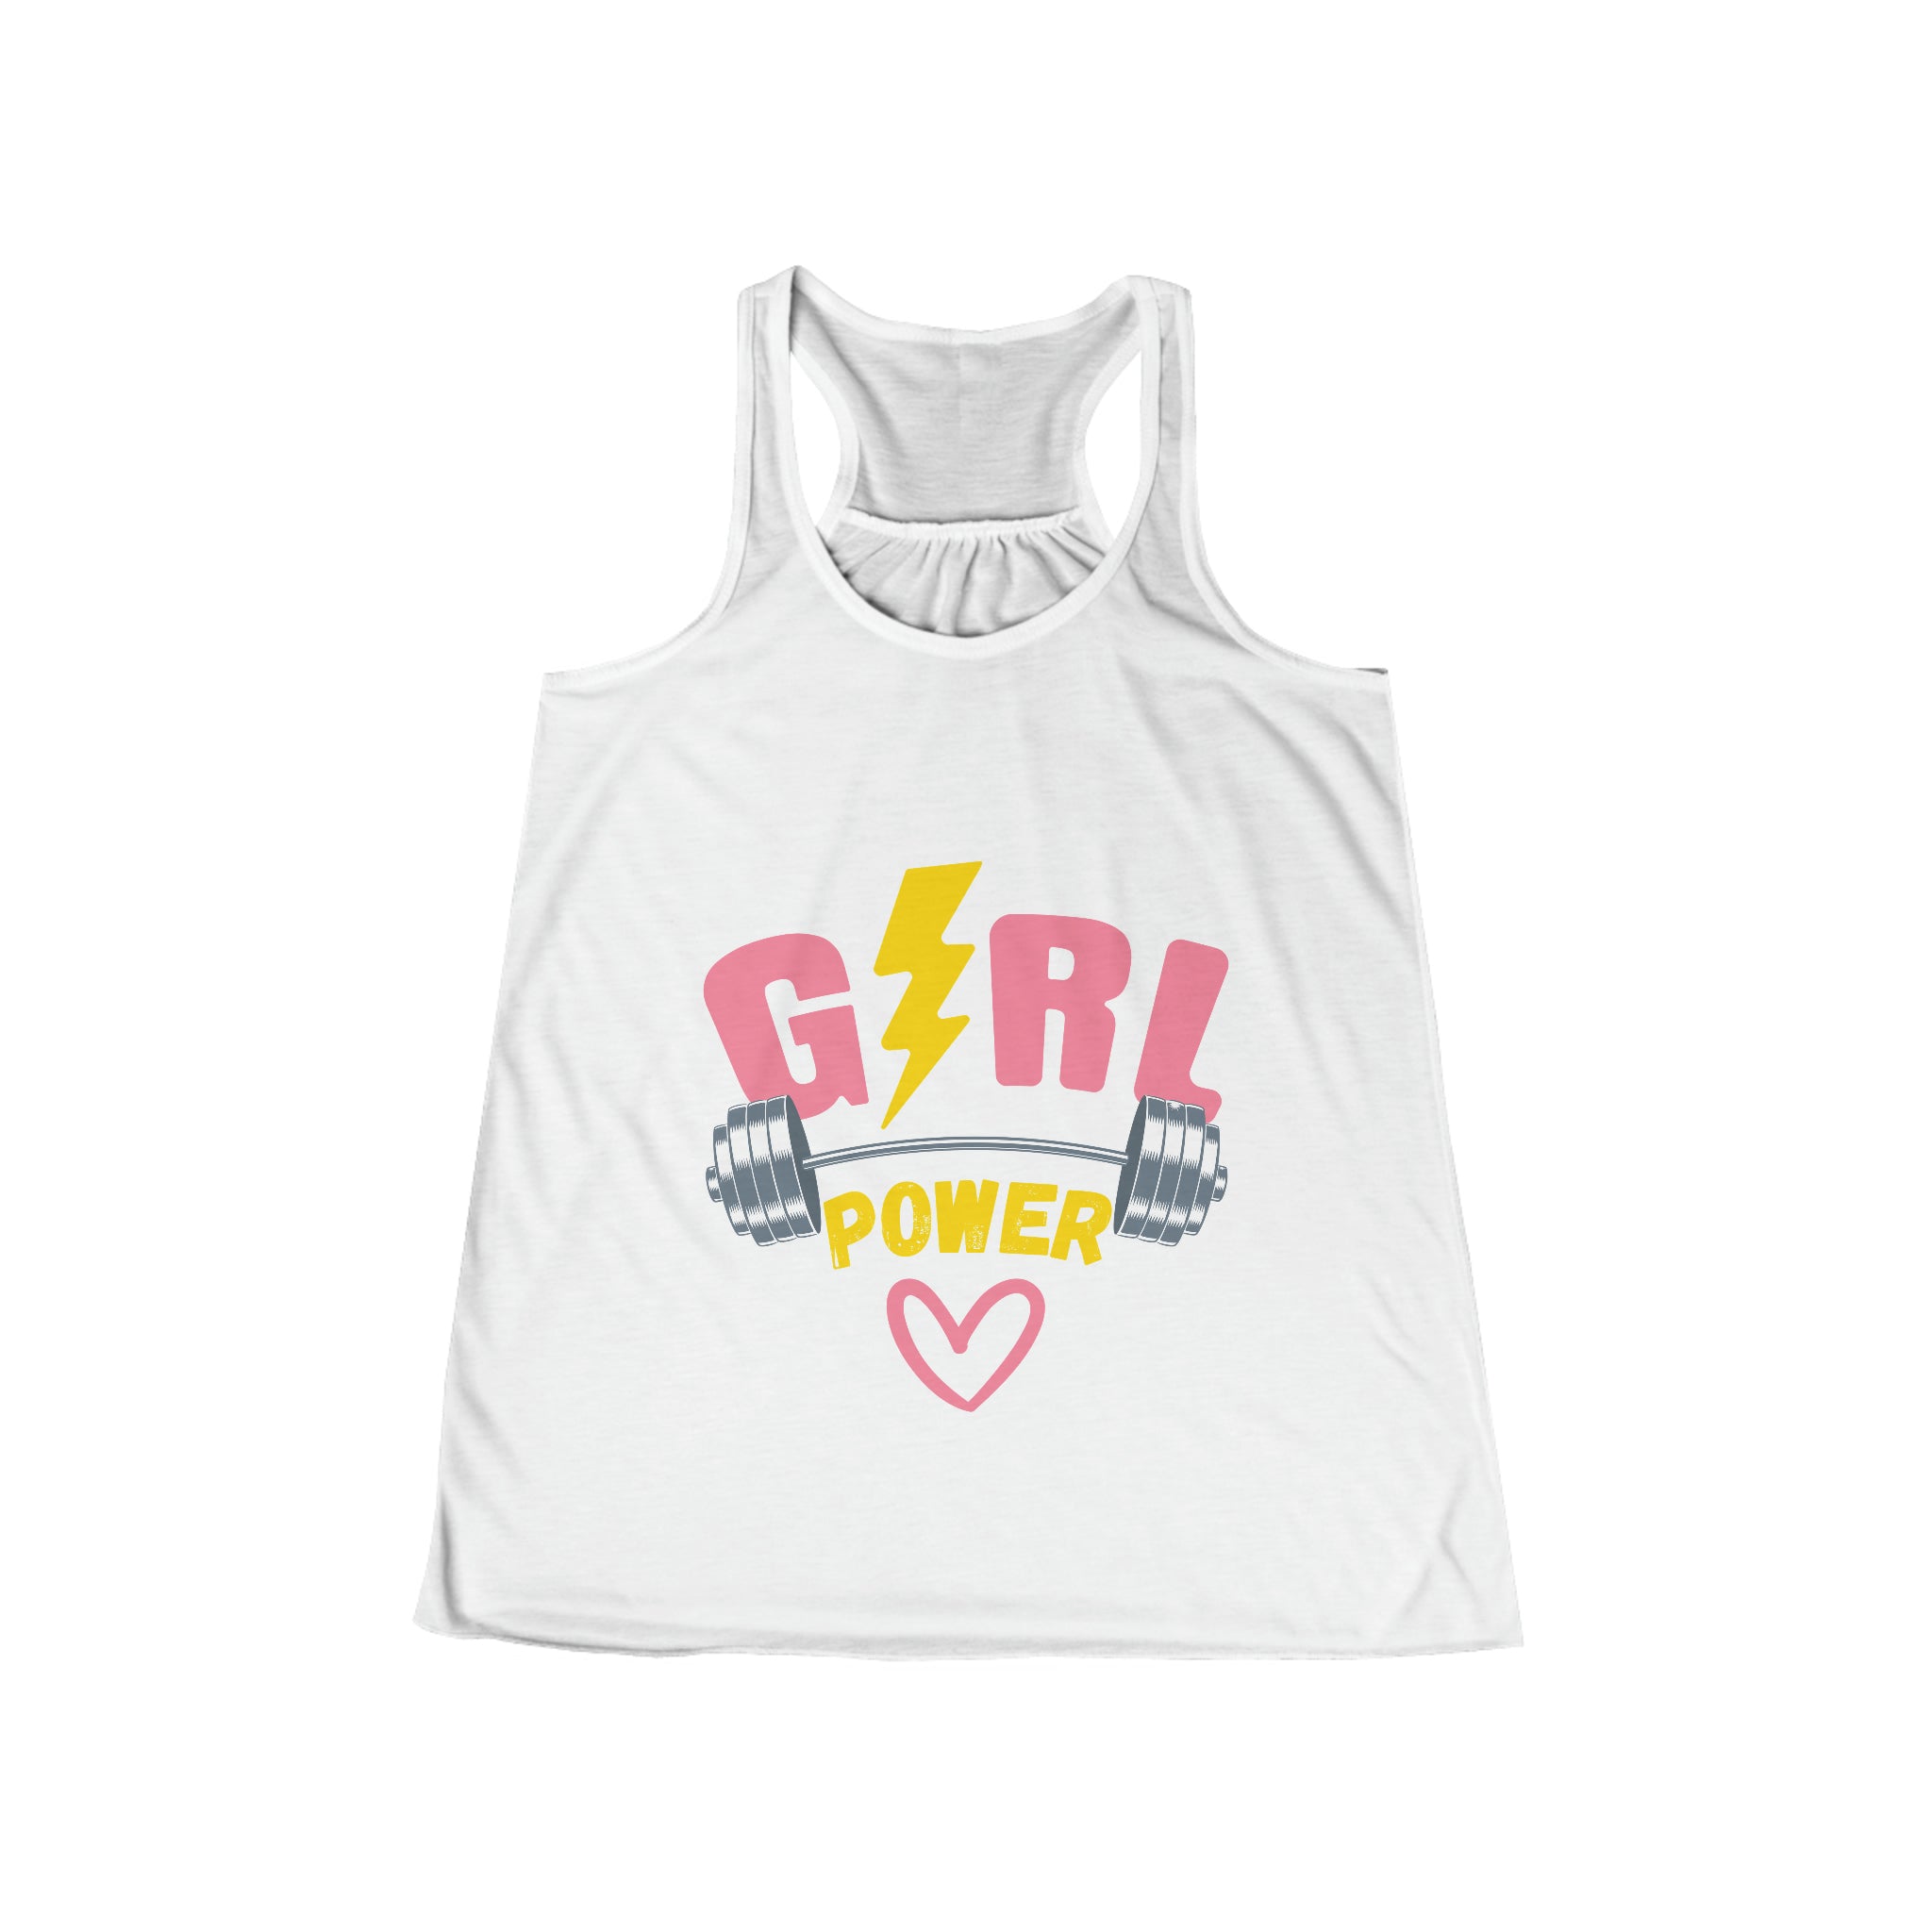 SORTYGO - Girl Power Women Flowy Racerback Tank in White